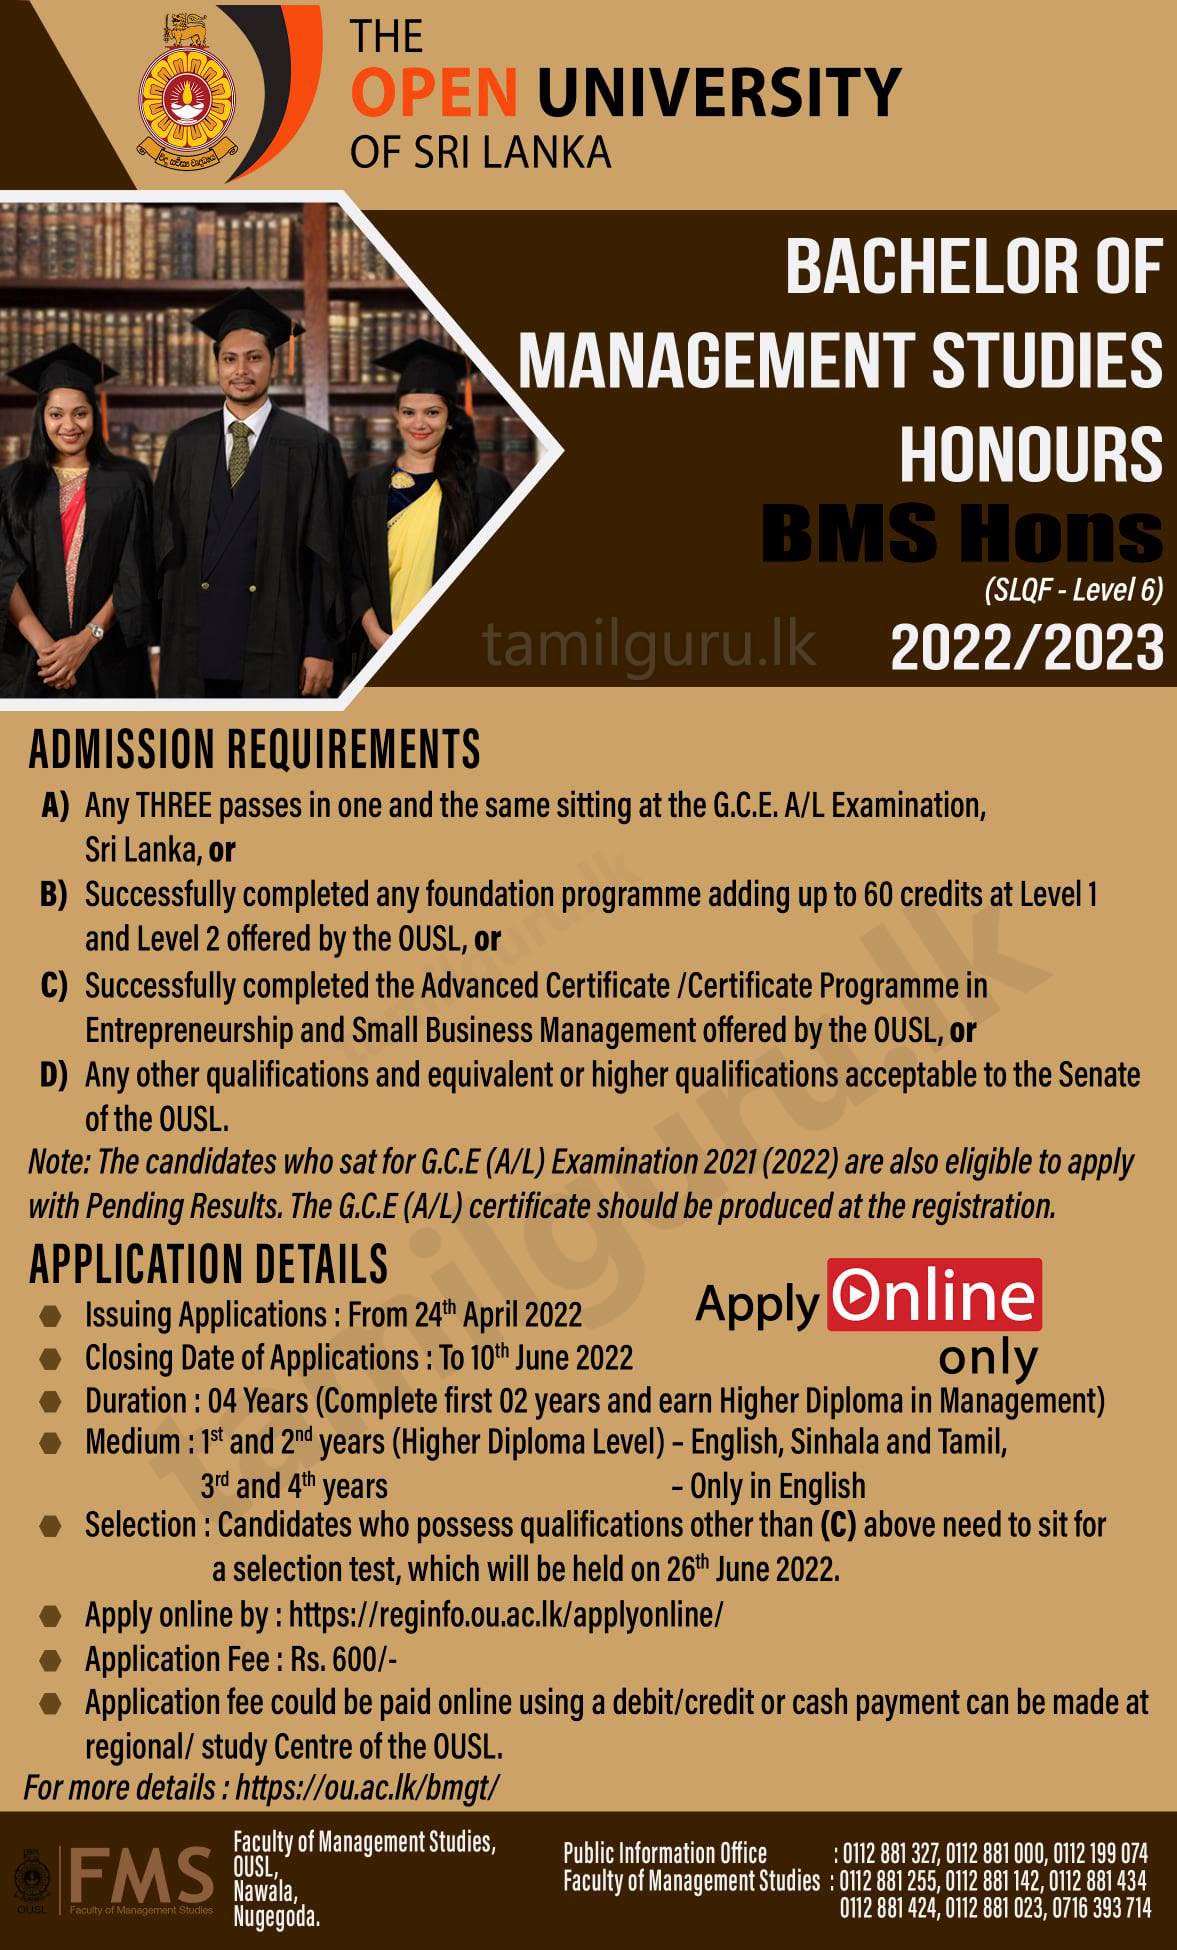 Bachelor of Management Studies (BMS) (Hons) Degree Programme 2022/2023 - The Open University of Sri Lanka (OUSL)